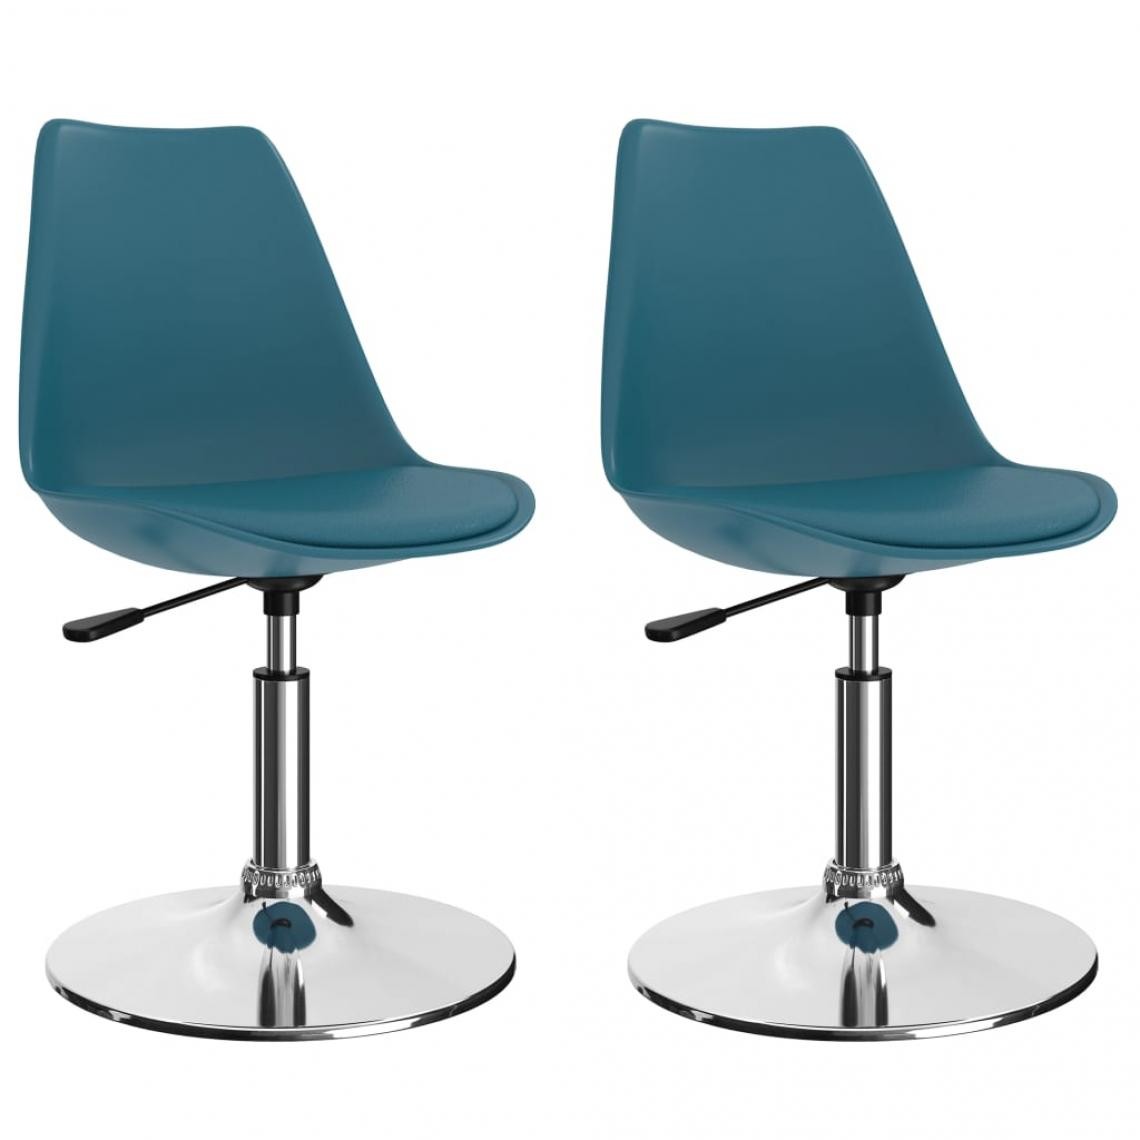 Decoshop26 - Lot de 2 chaises de salle à manger cuisine pivotantes design moderne similicuir turquoise CDS020939 - Chaises